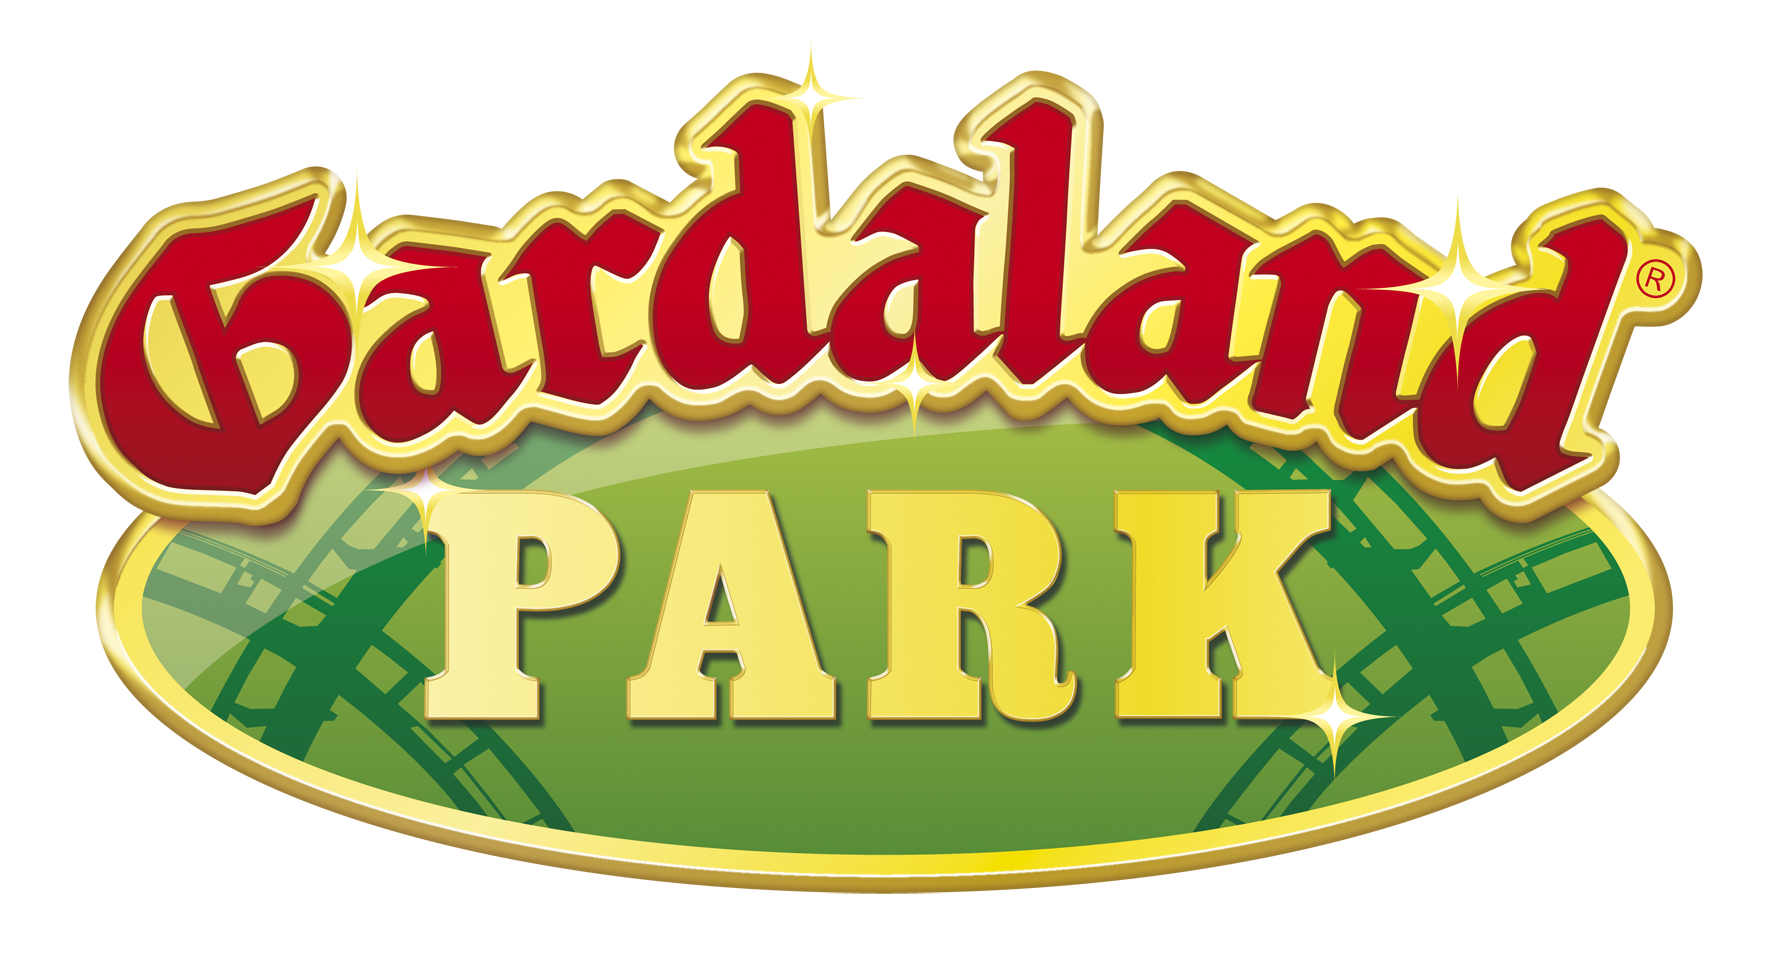 gardaland park logo a aw